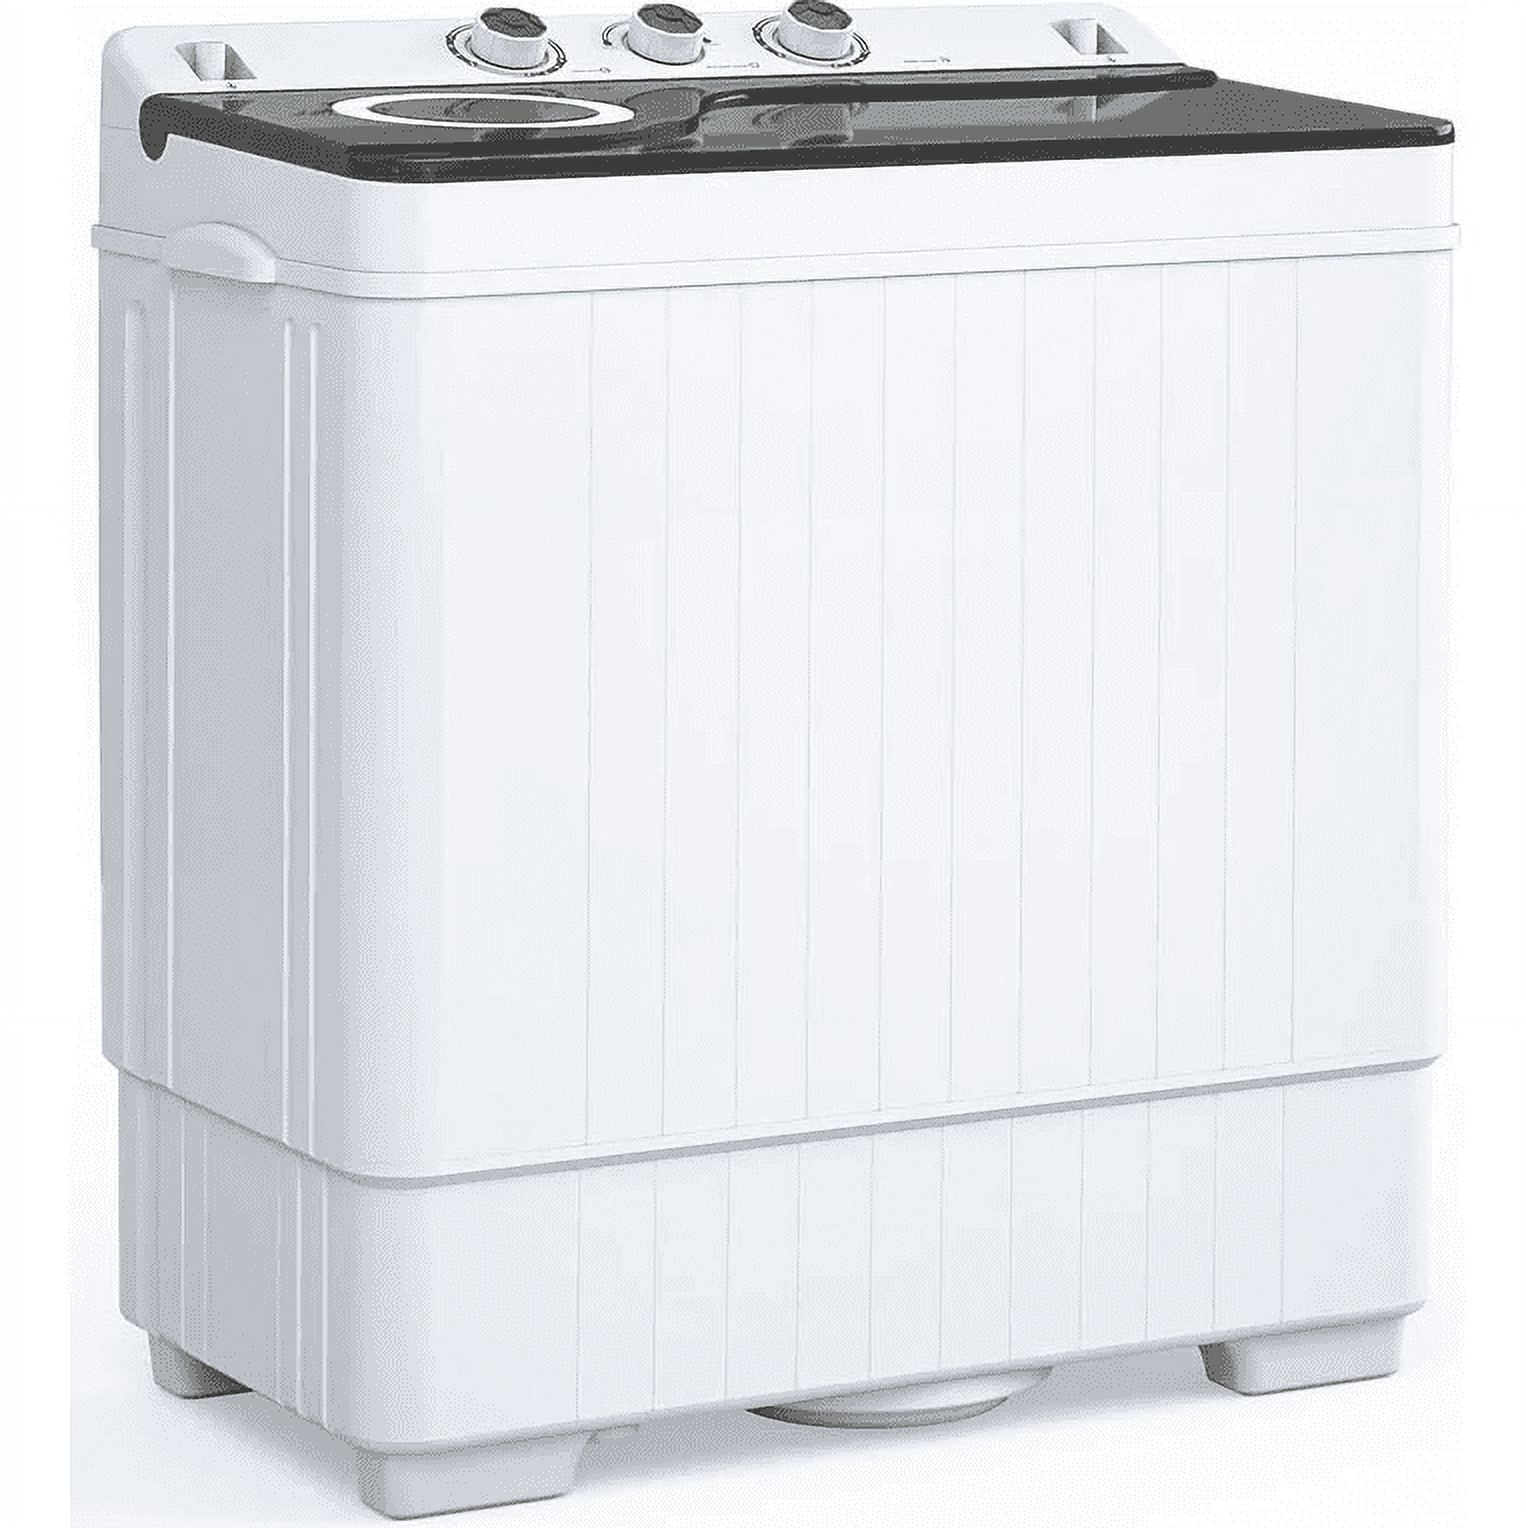 8l Large Capacity Foldable Mini Washing Machine - Fully Automatic Port –  vacpi